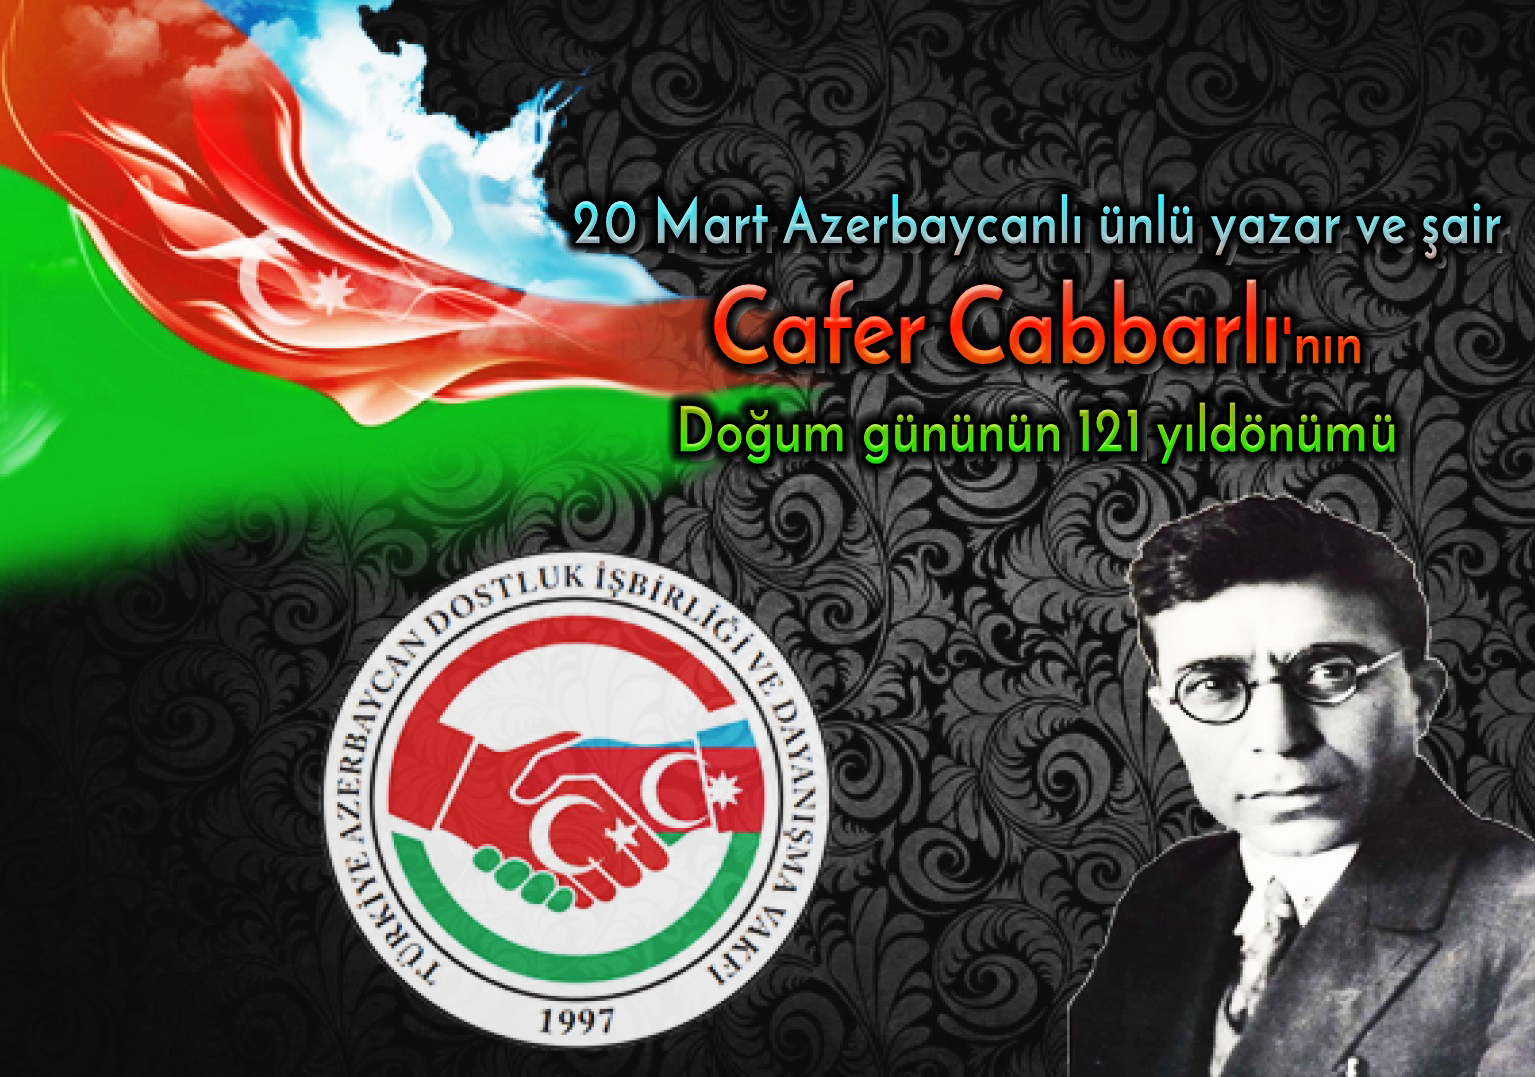 20 Mart Azerbaycanlı ünlü yazar ve şair Cafer Cabbarlı'Nın Doğum gününün 121 yıl dönümü